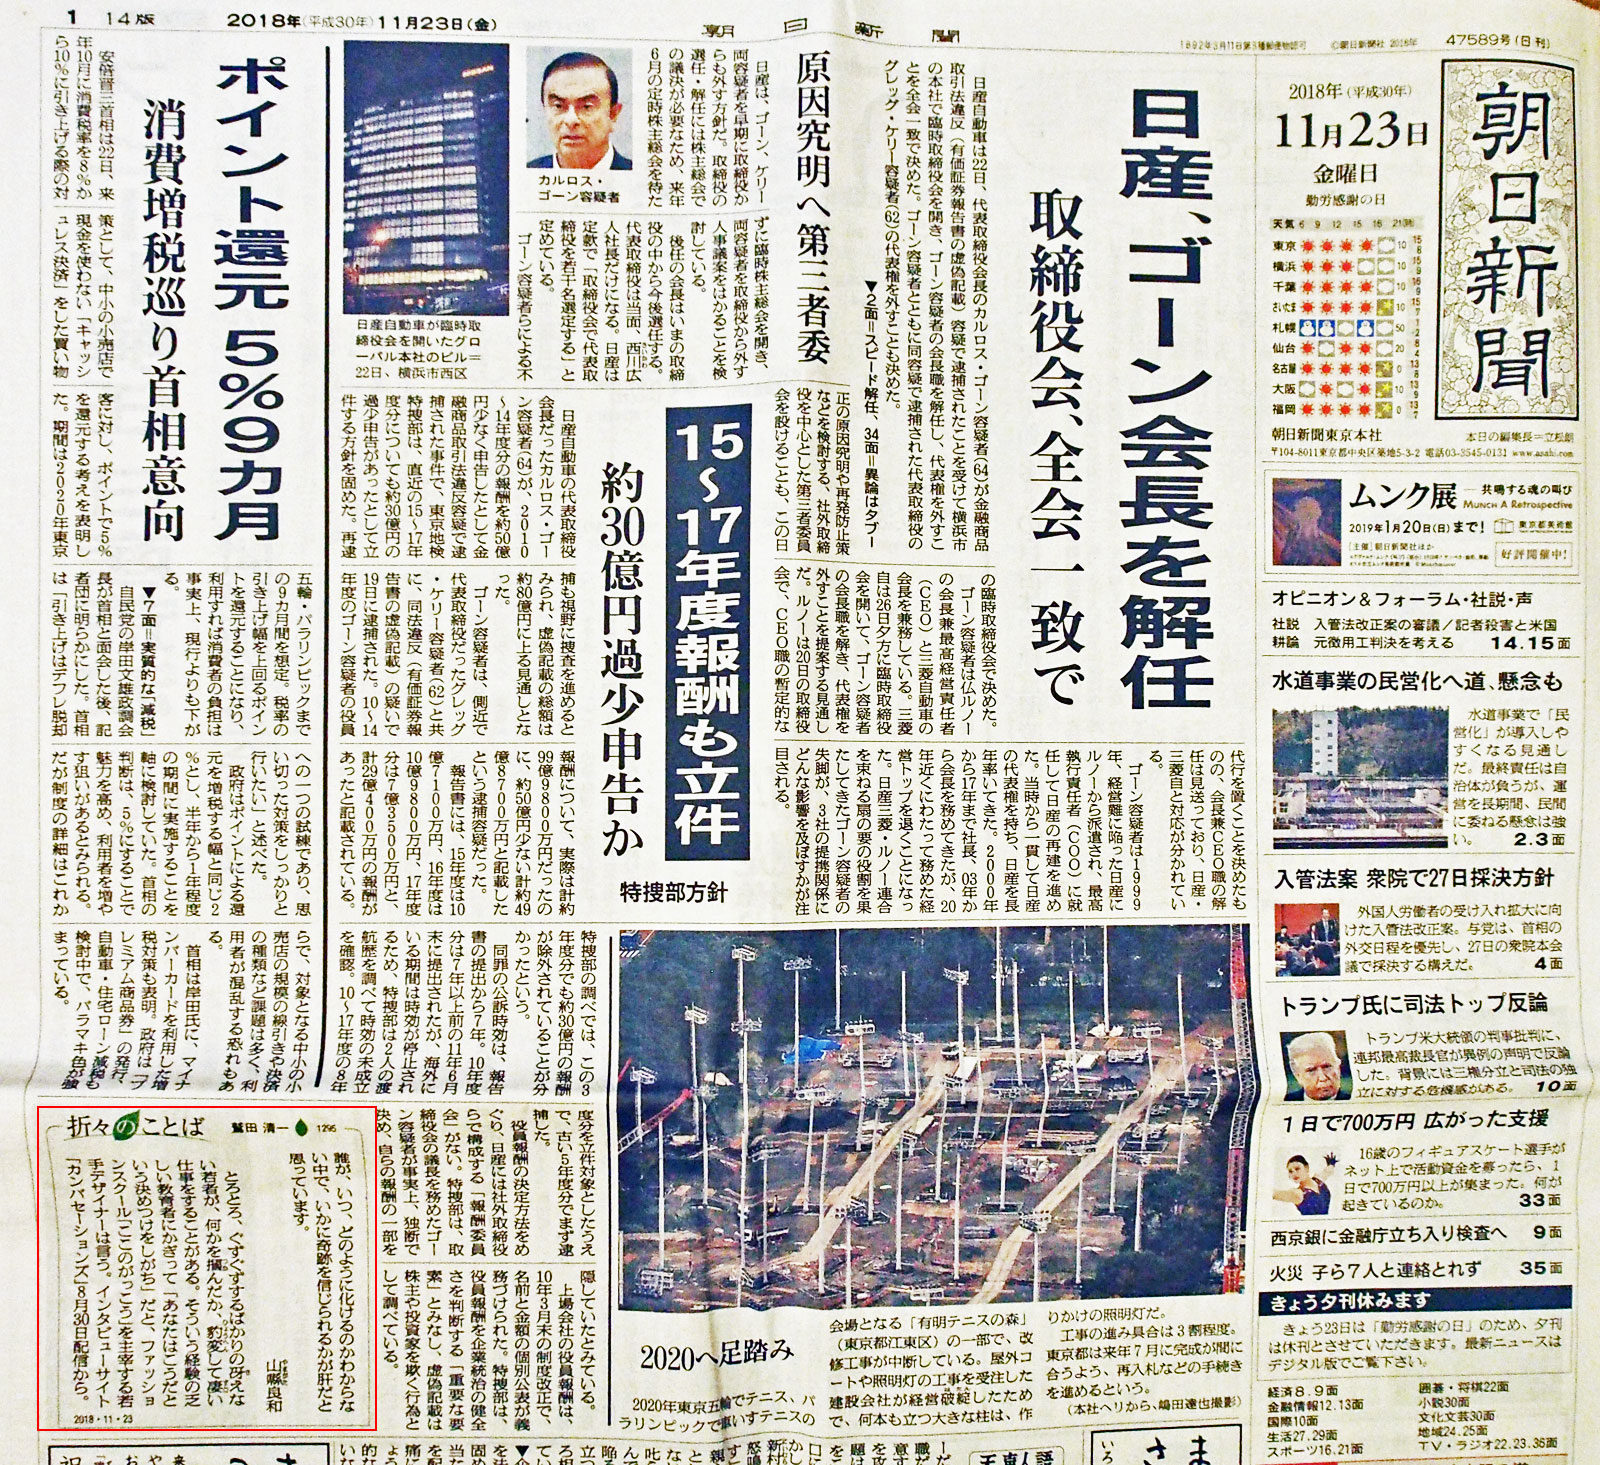 メディア掲載情報 朝日新聞一面に山懸良和さんのコメントが掲載されました Topics Qonversations